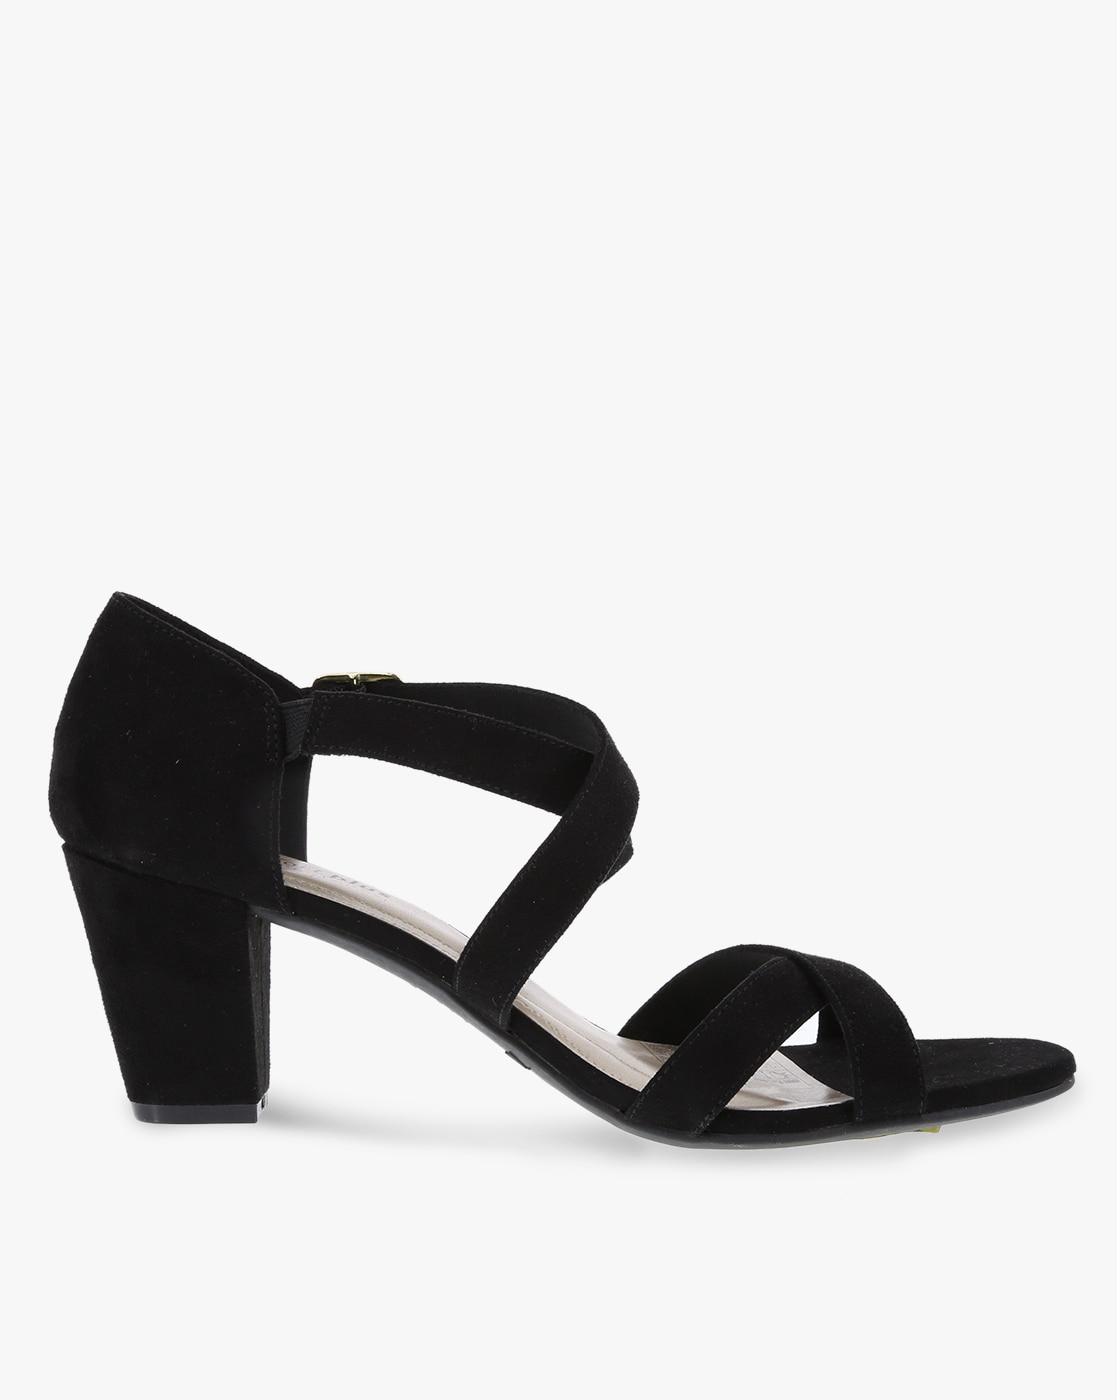 comfort plus black heels